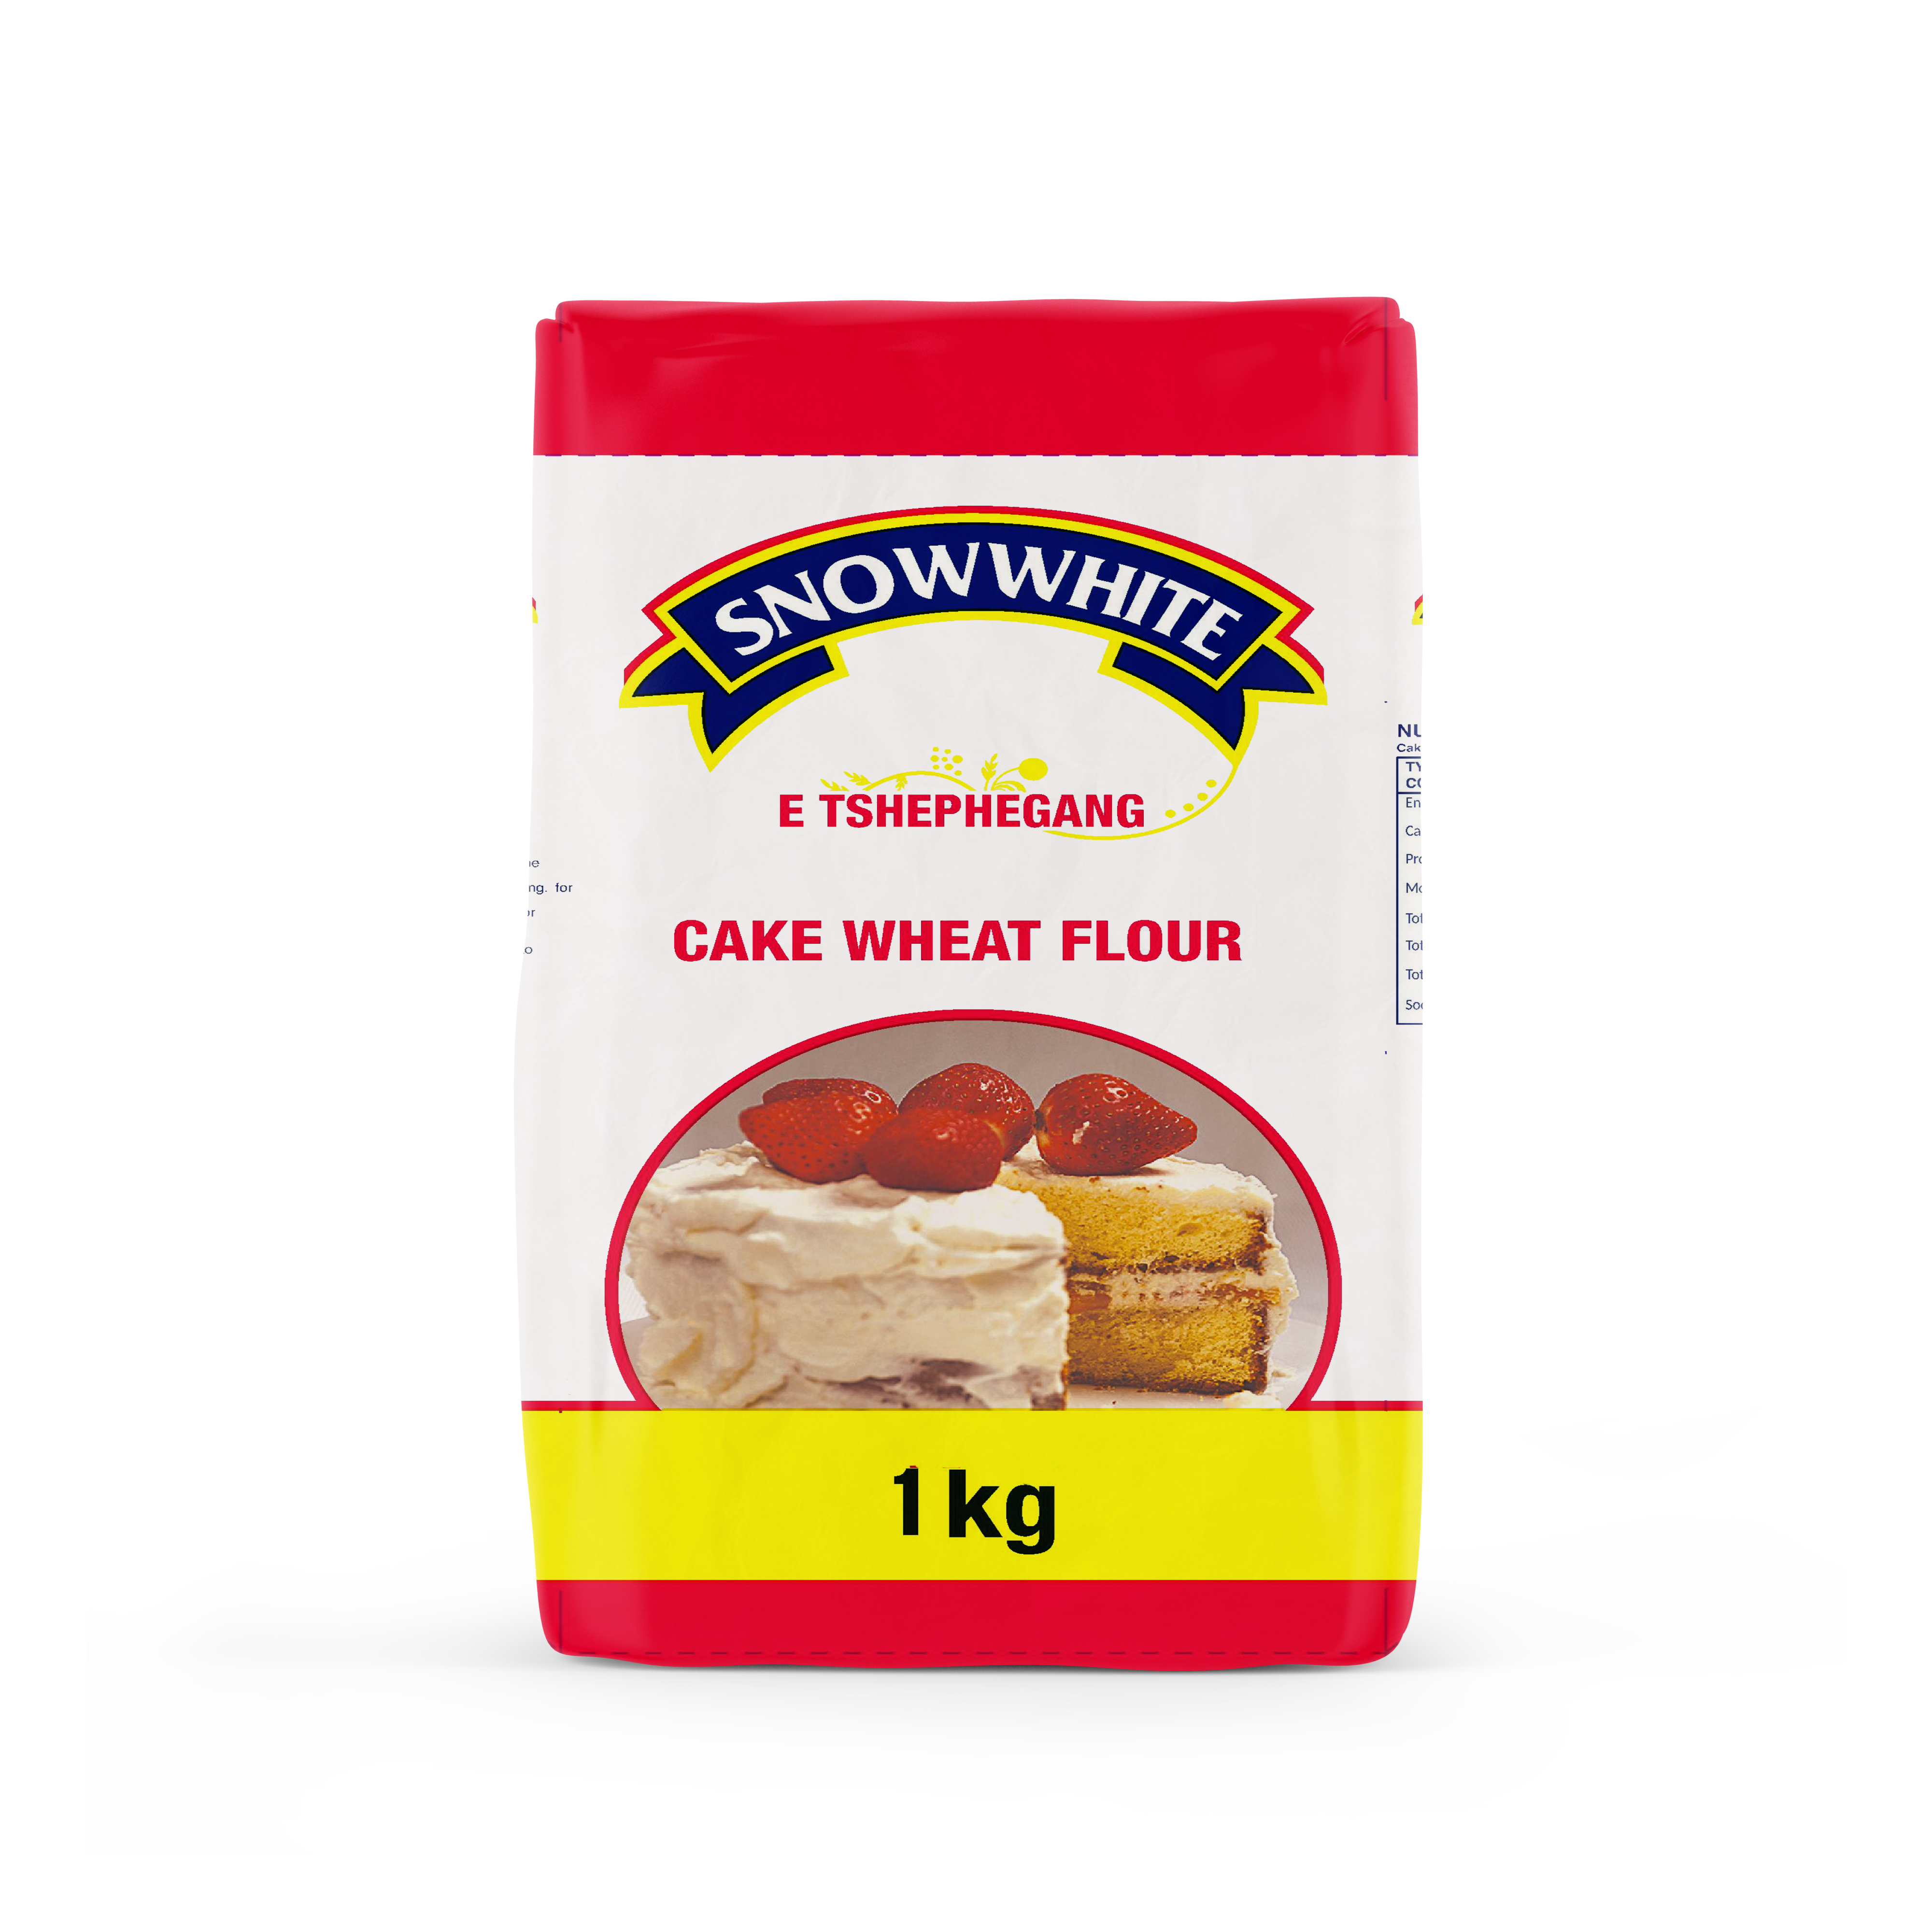 Snowwhite Cake Wheat Flour 1 Kg